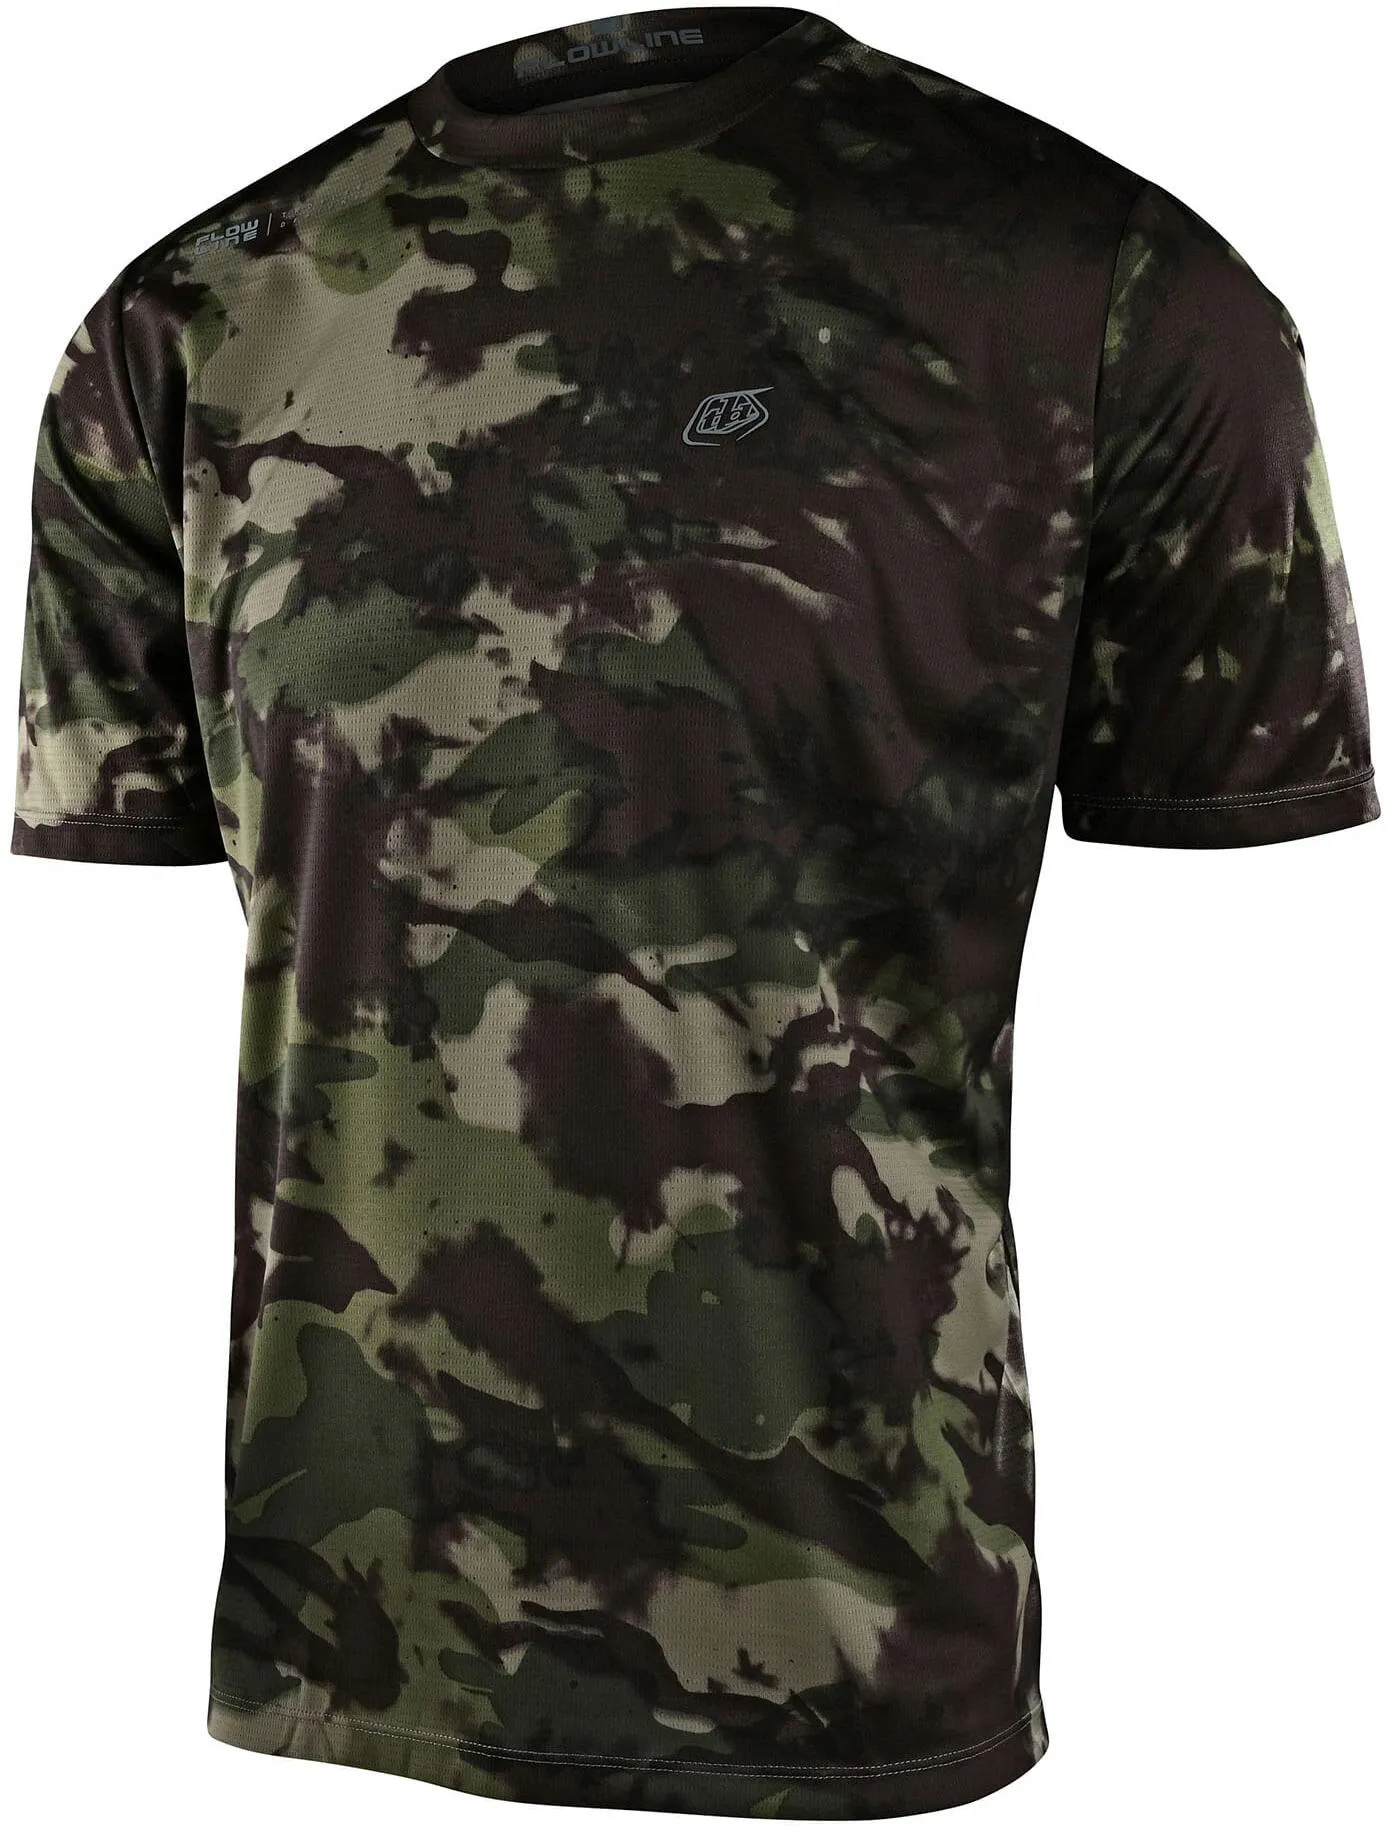  Flowline Short Sleeve Jersey, Covert Army Green